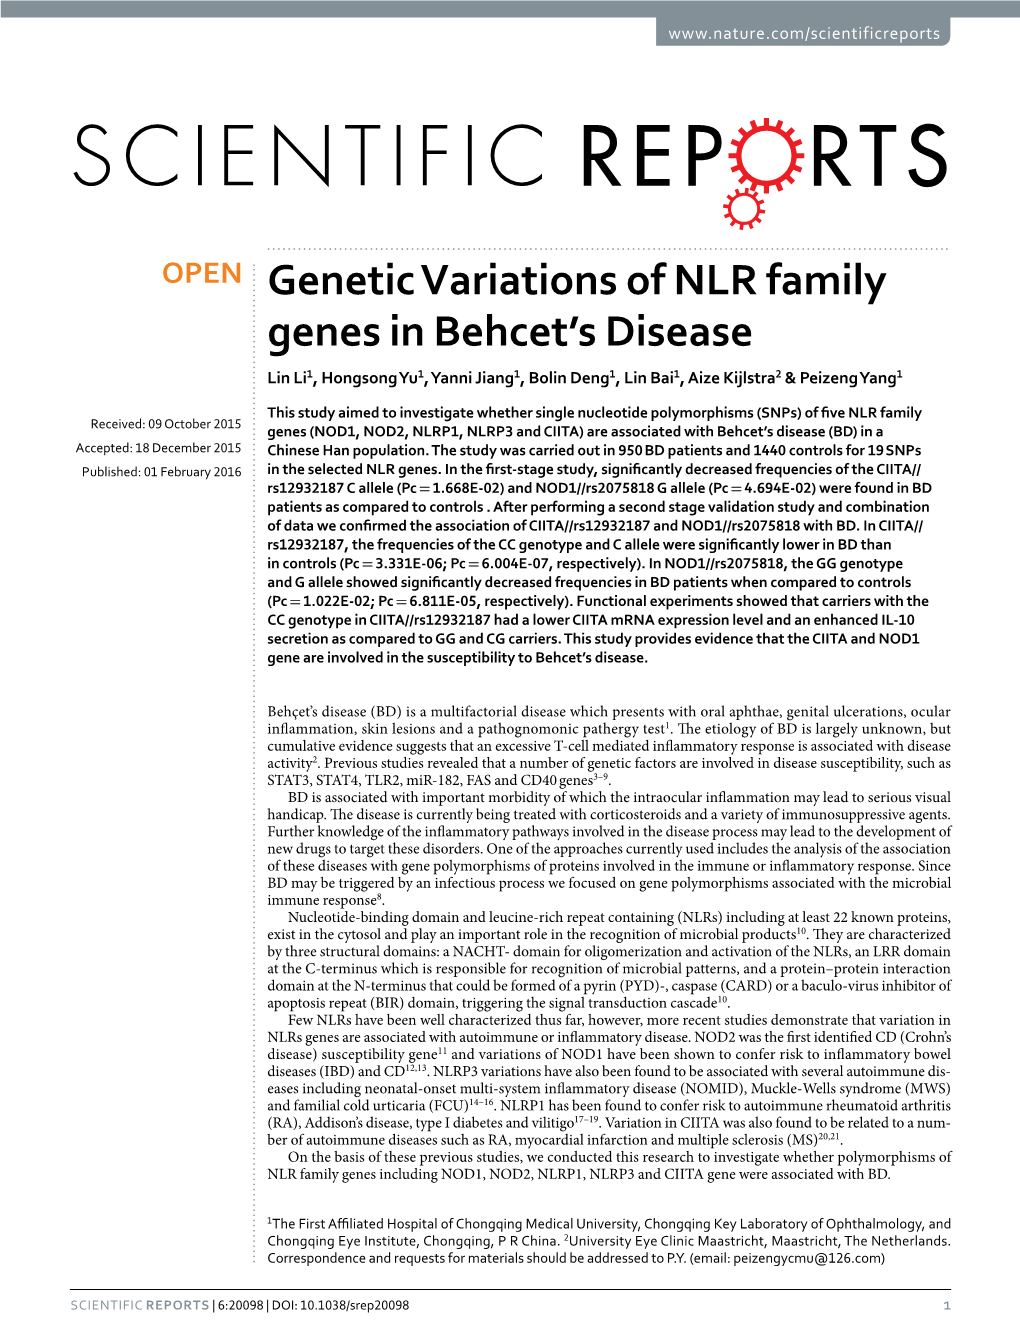 Genetic Variations of NLR Family Genes in Behcet's Disease